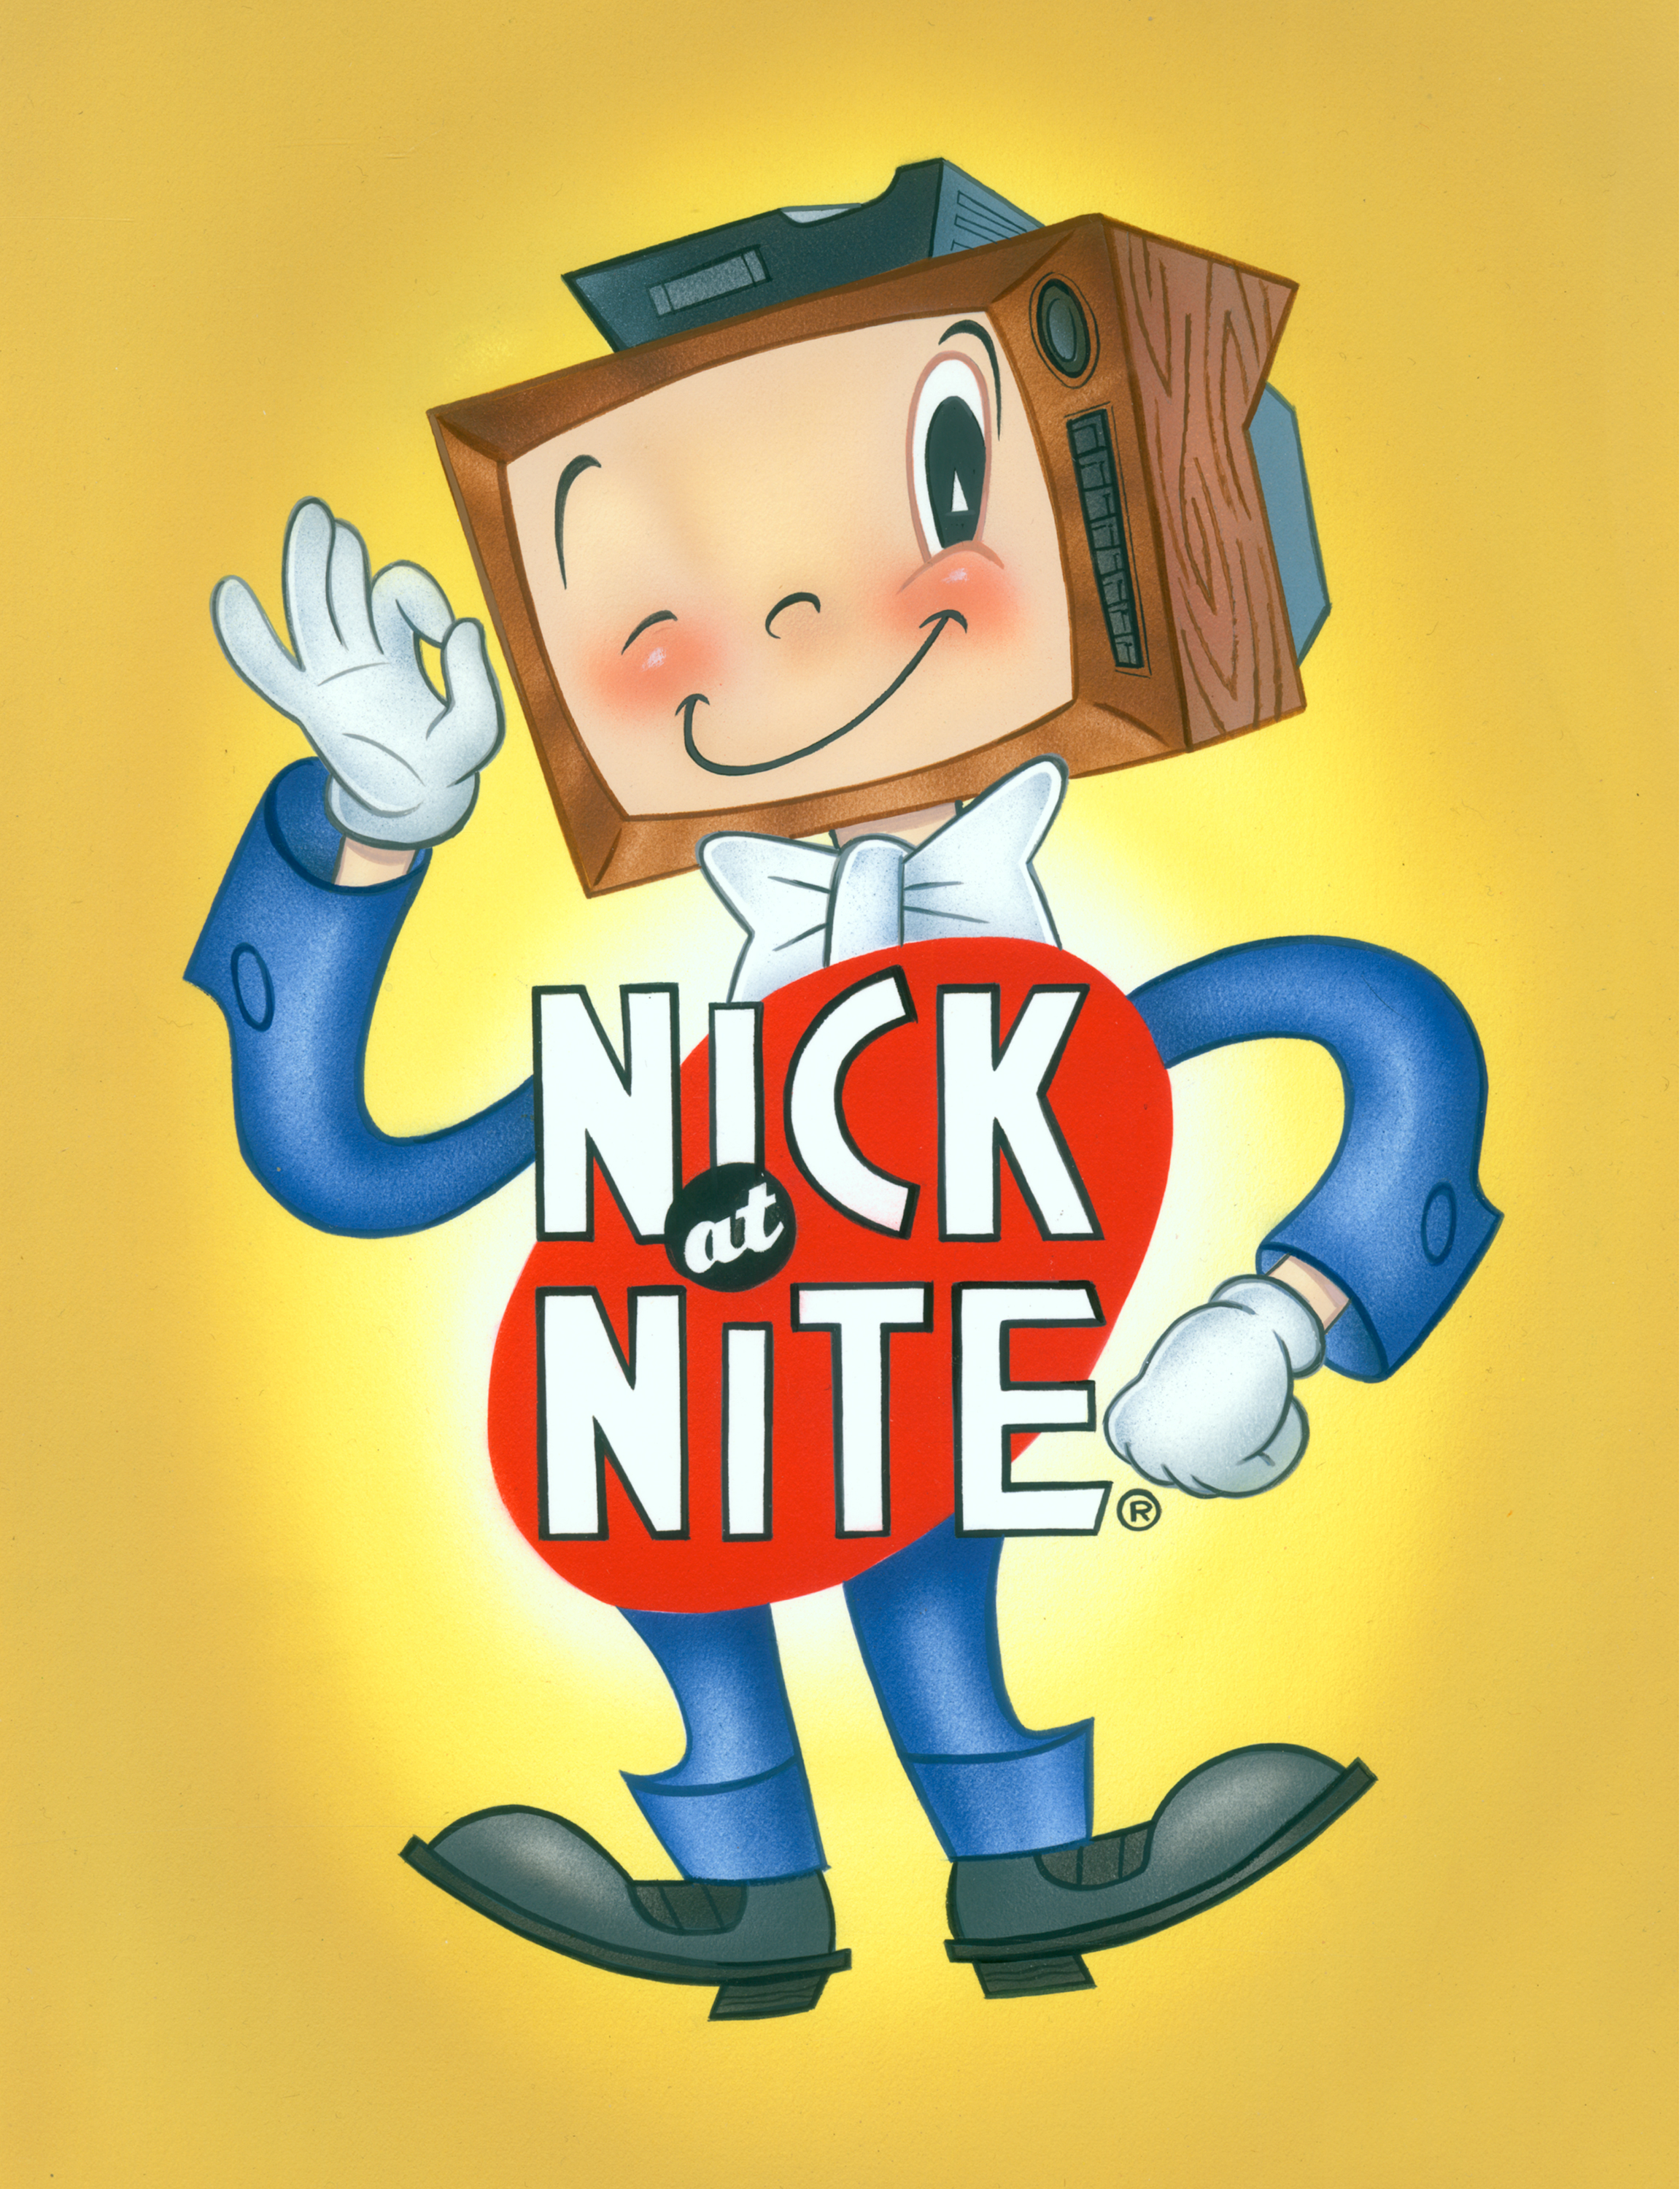 Nick at Nite